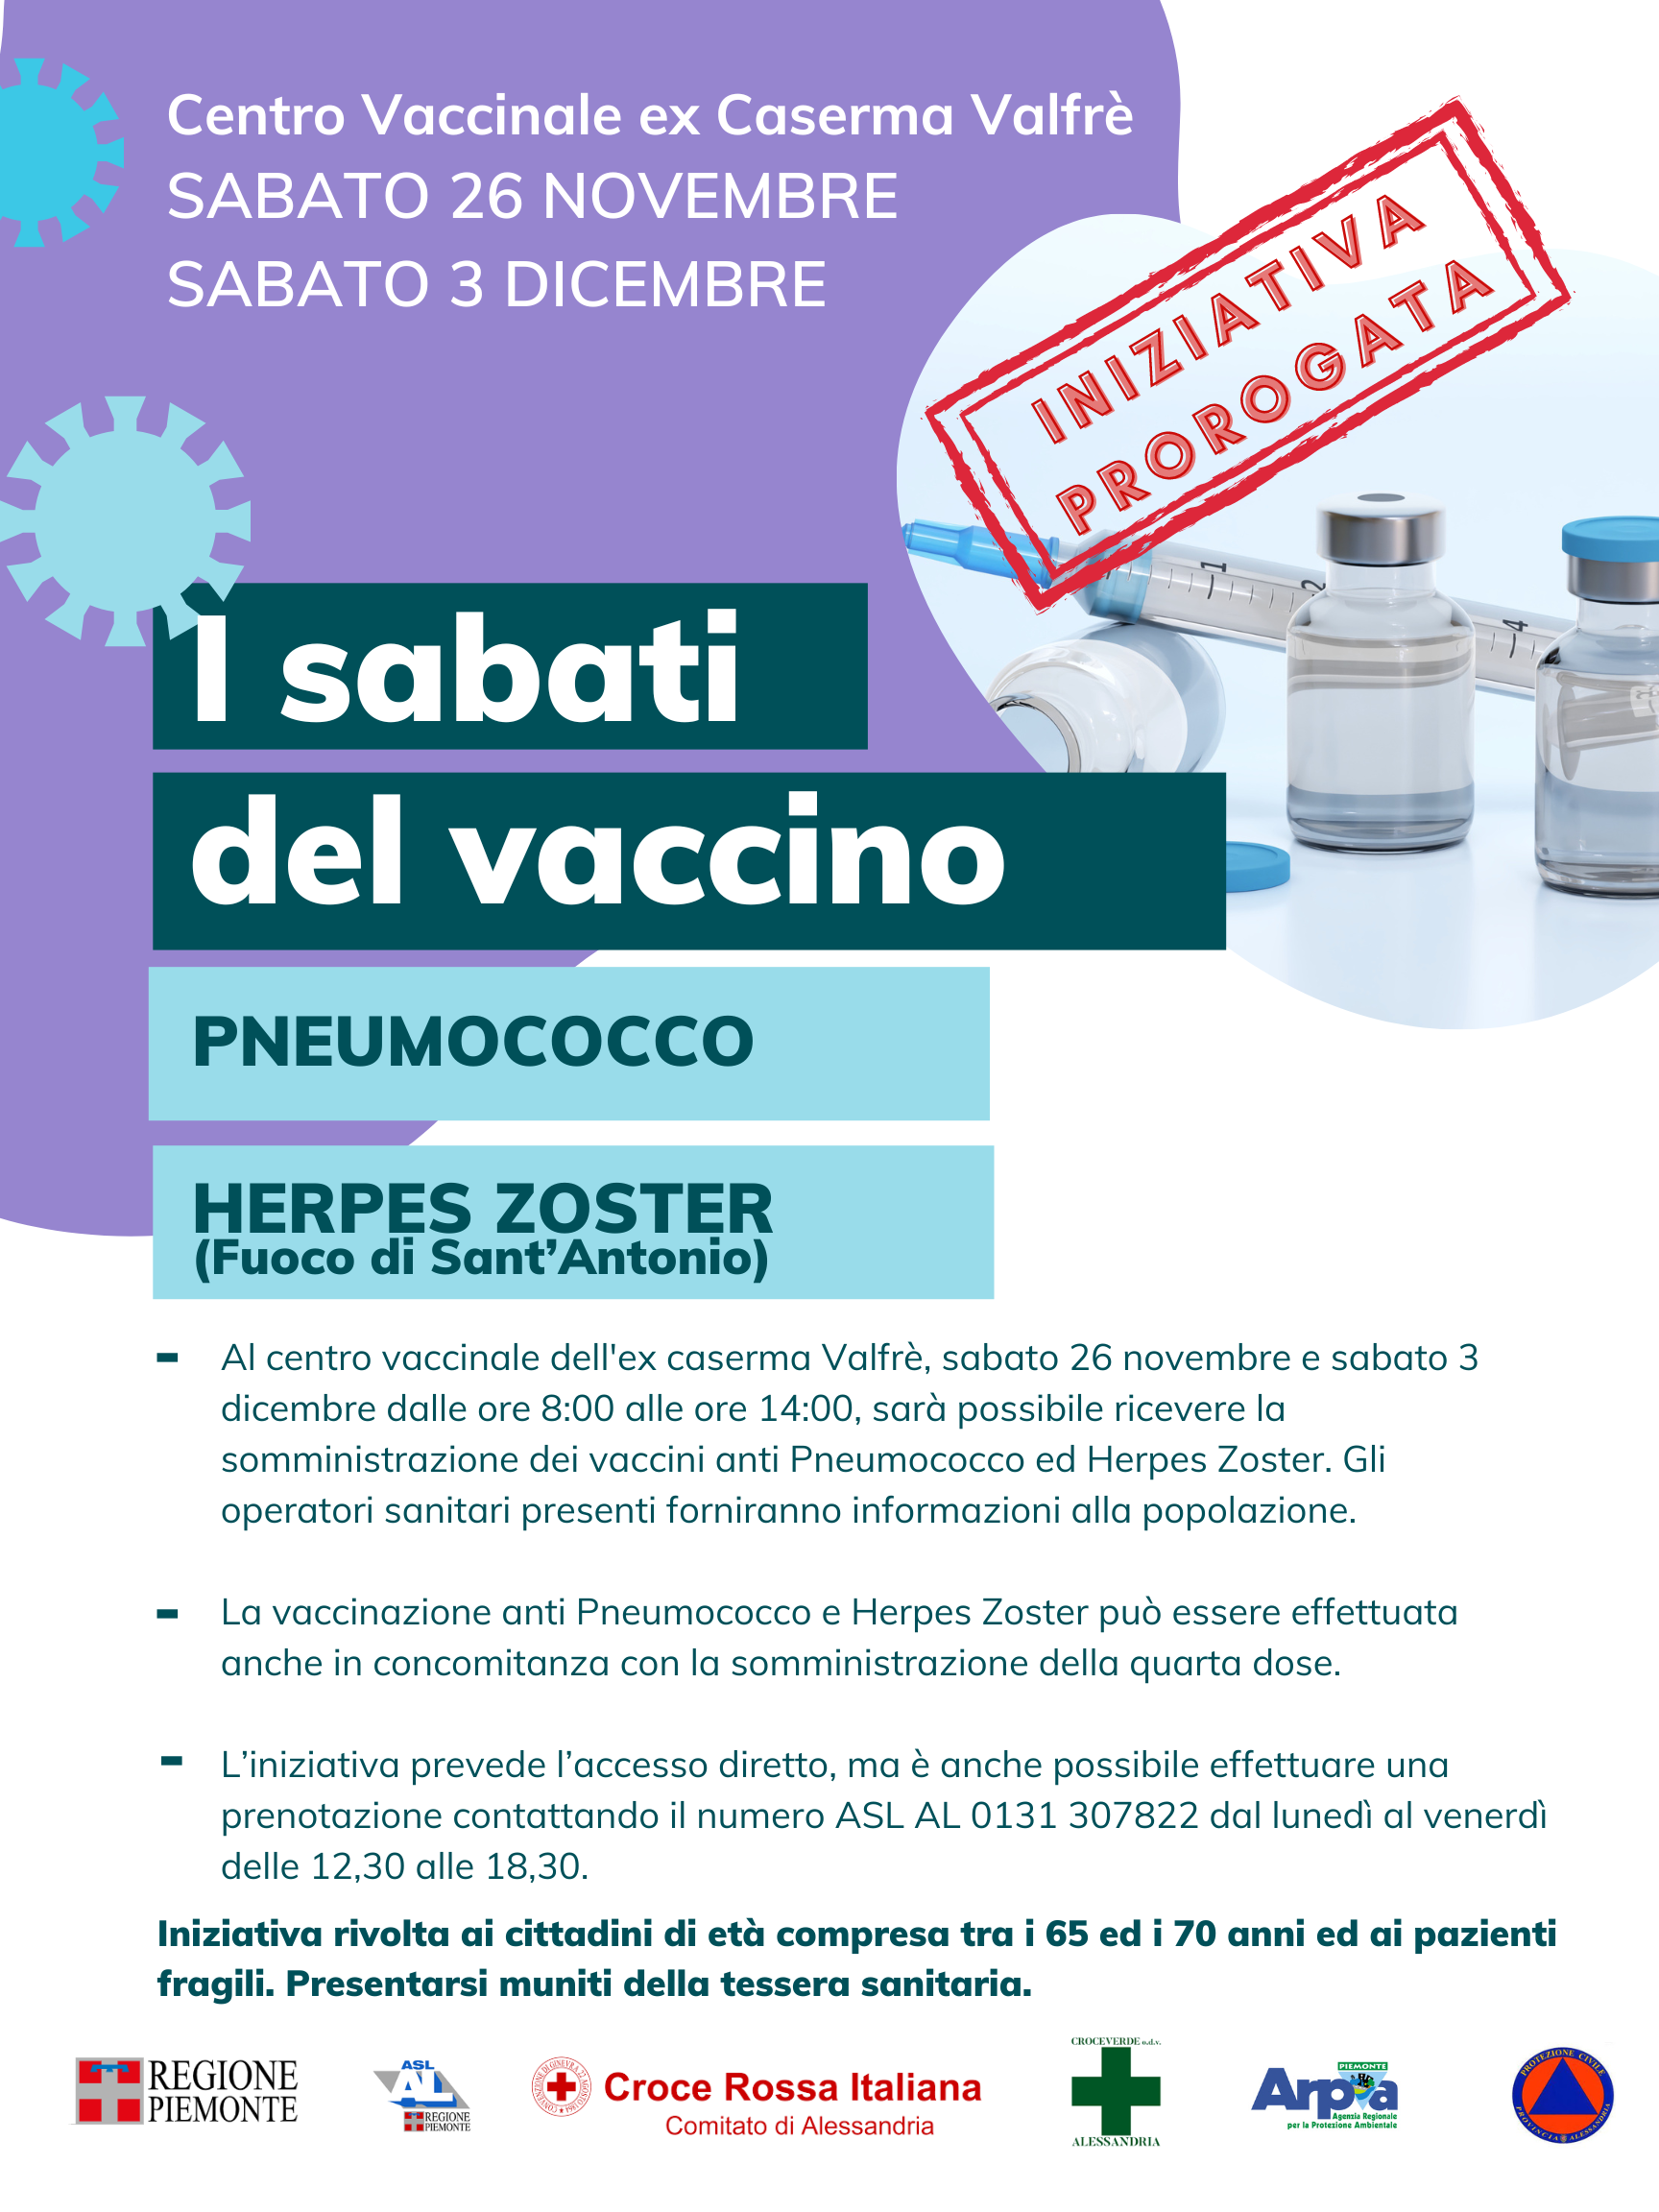 Prorogata per fino al 3 dicembre l'iniziativa di vaccinazione contro lo Pneumococco e l’Herpes Zoster (fuoco di Sant’Antonio)